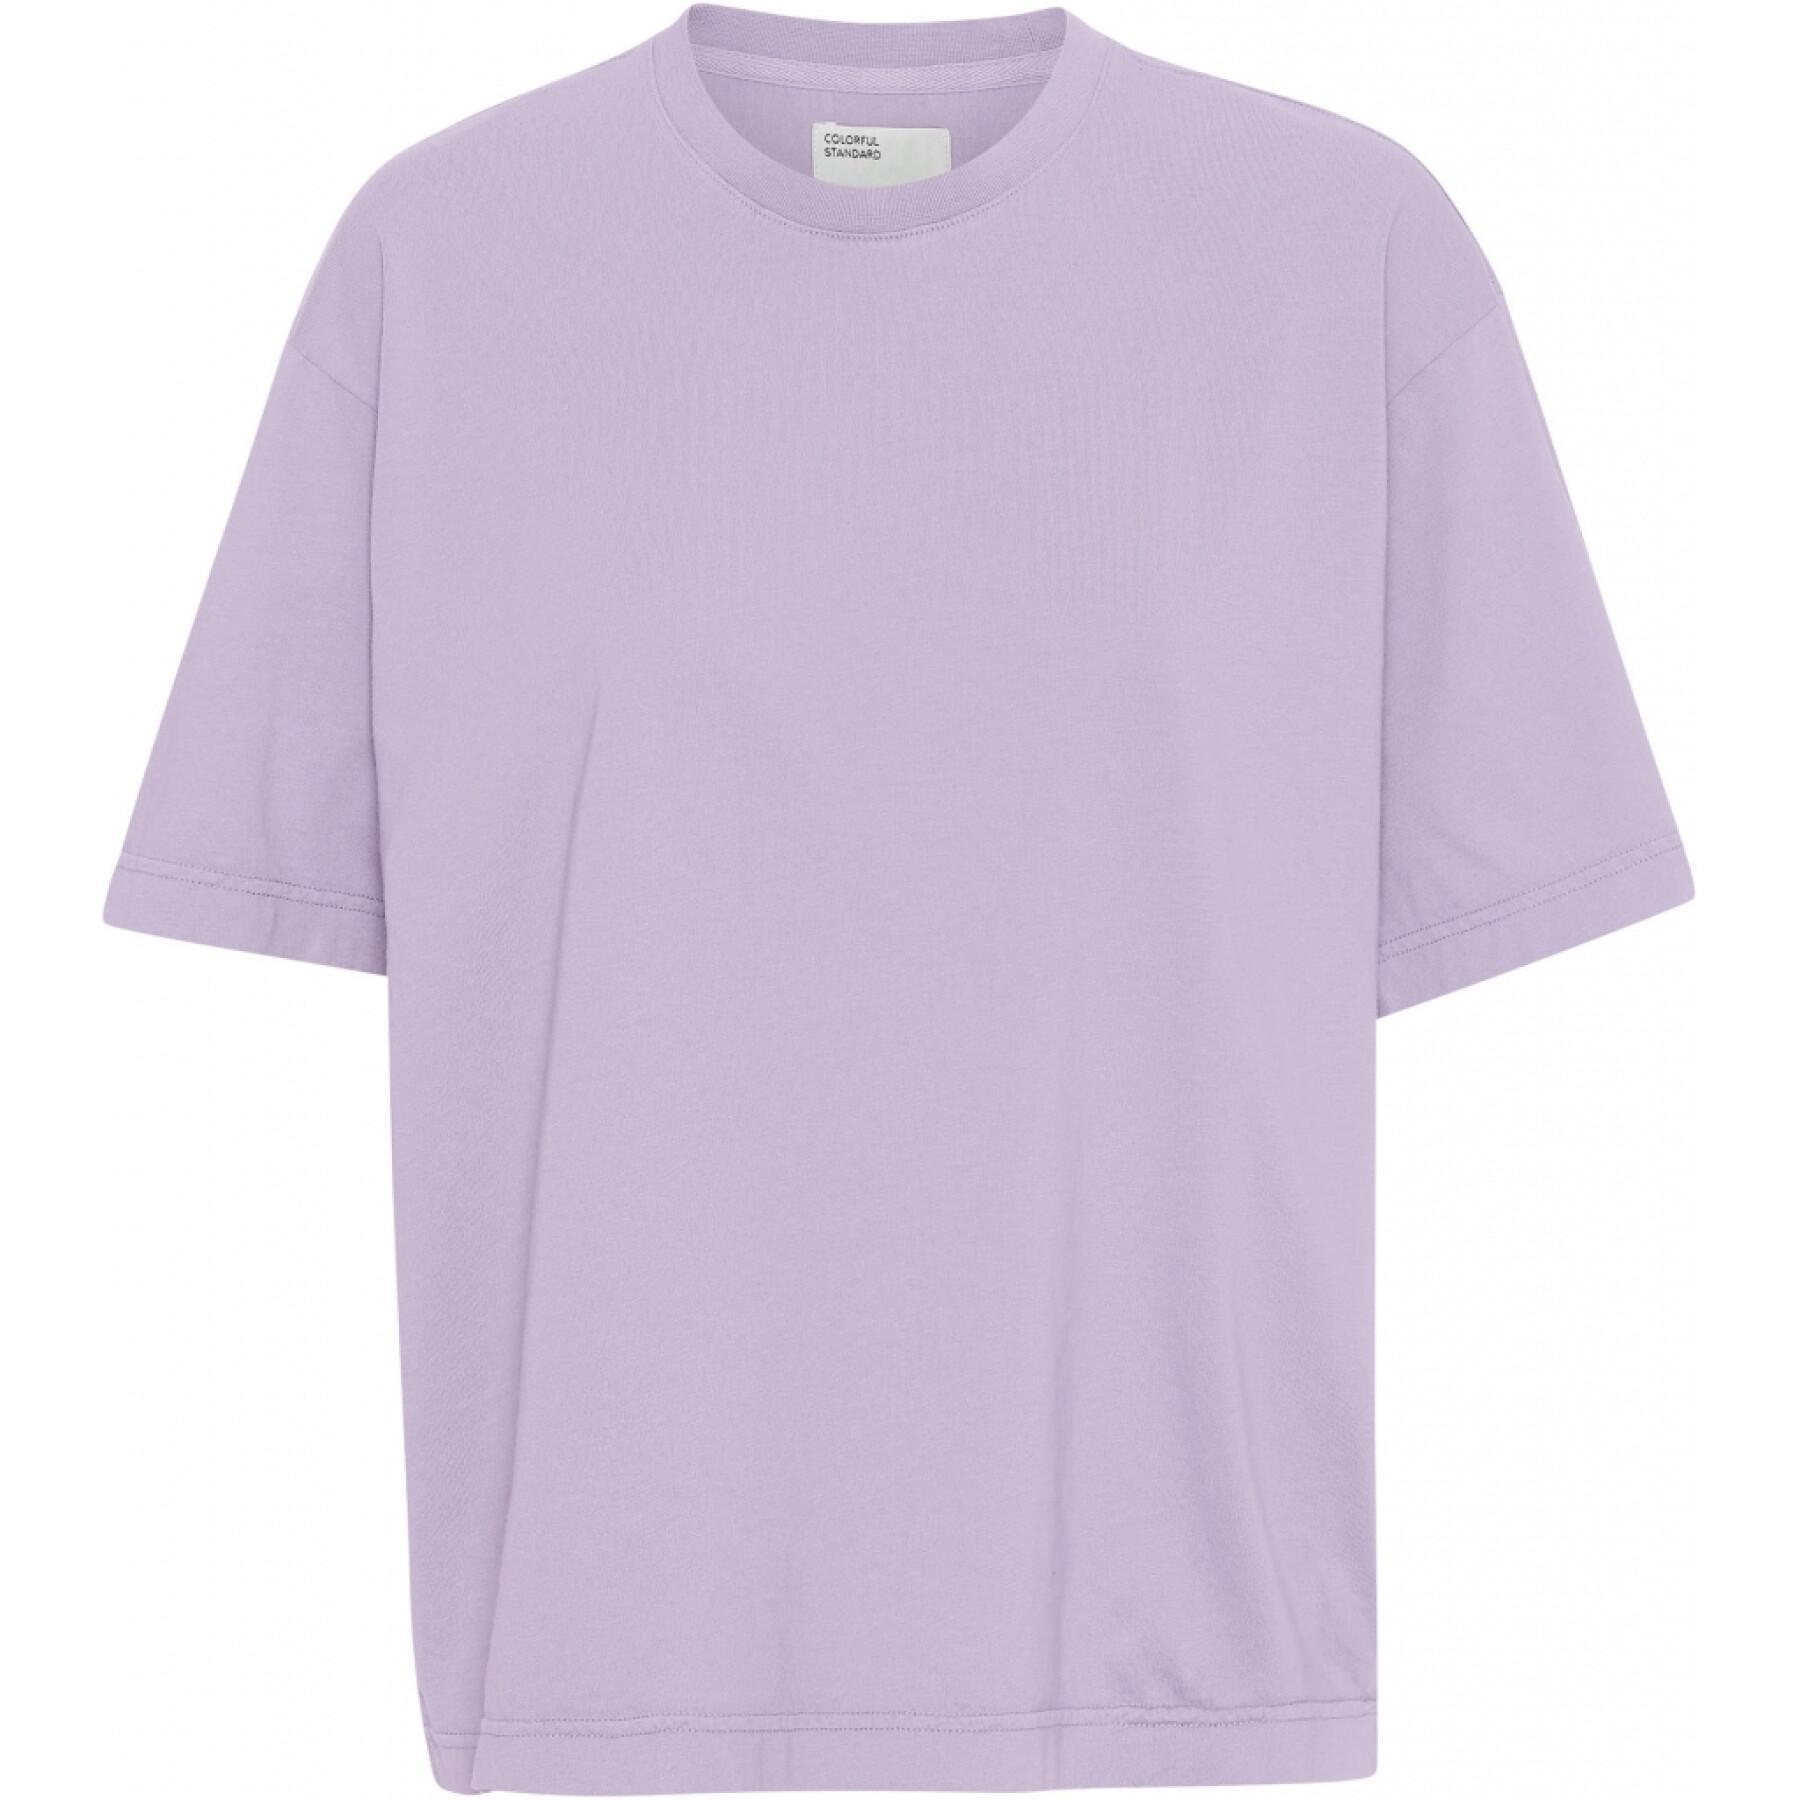 Camiseta feminina Colorful Standard Organic oversized soft lavender